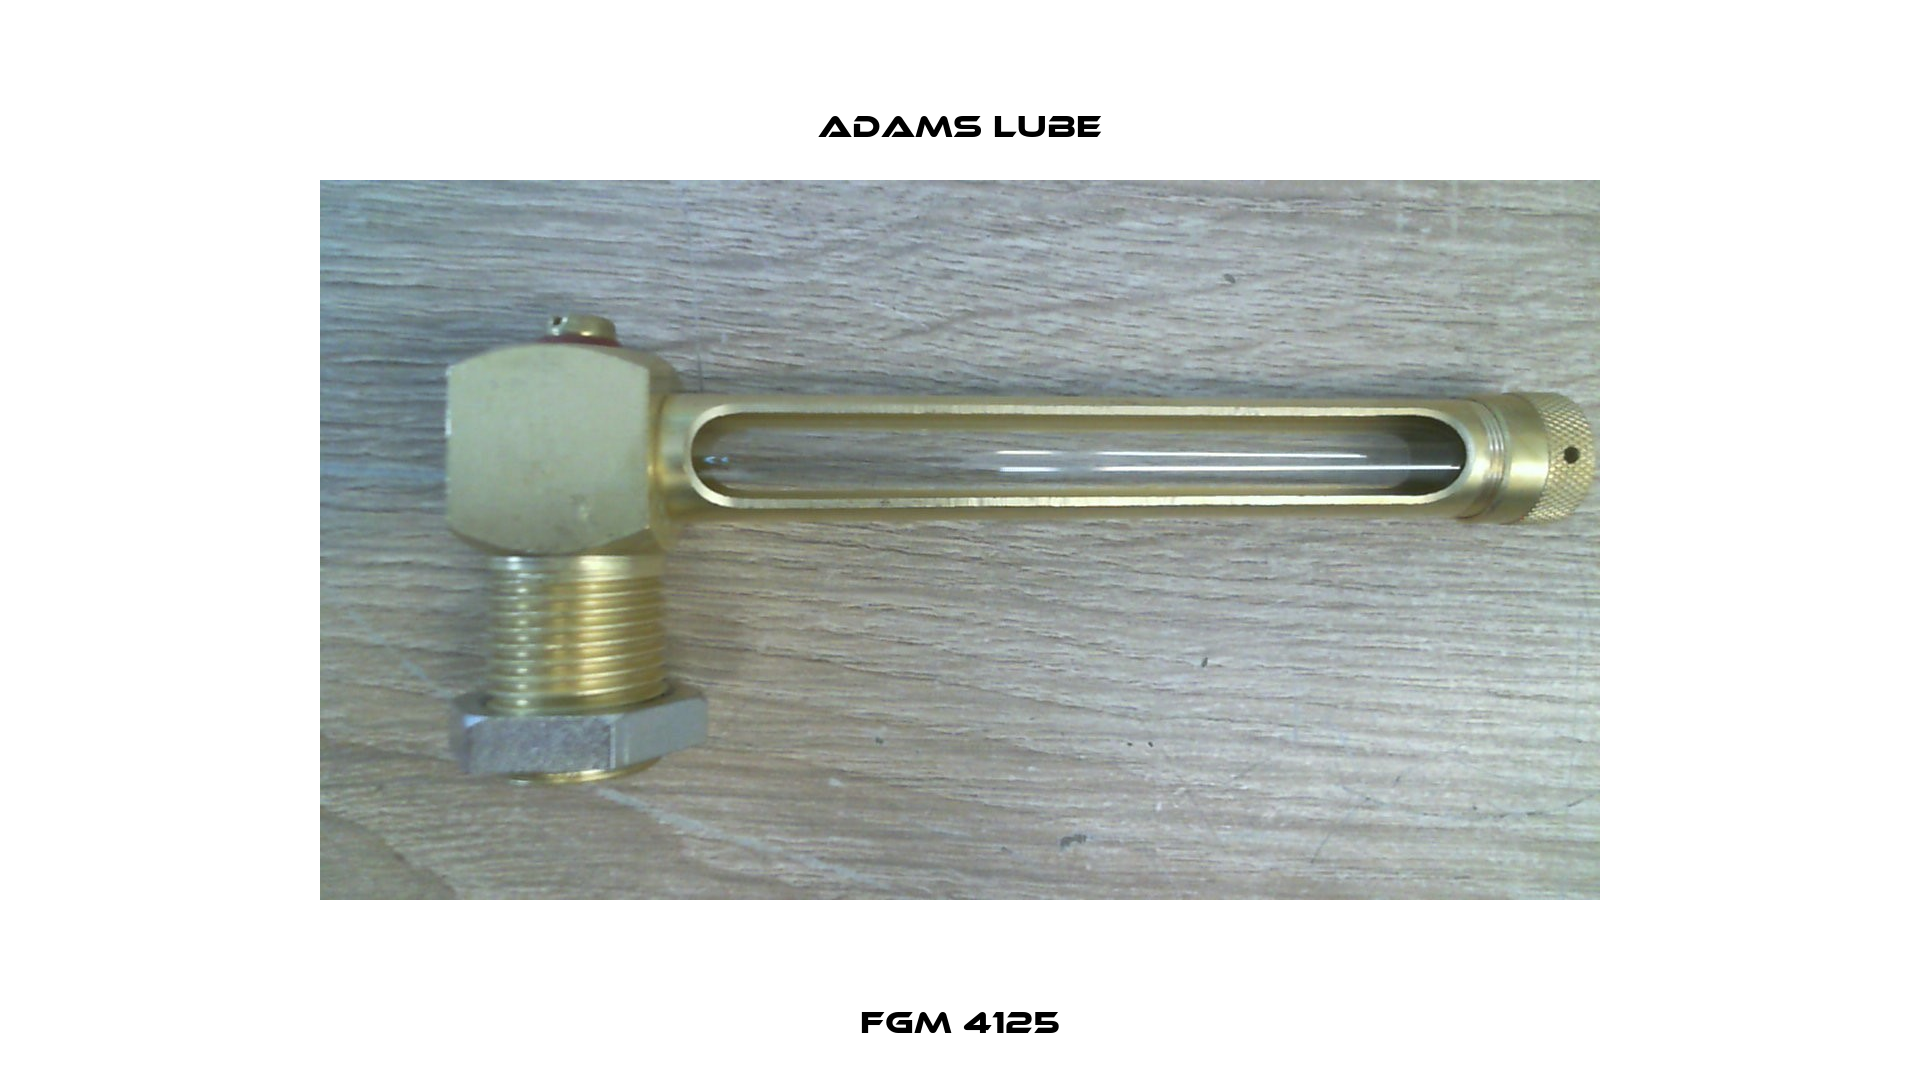 FGM 4125 Adams Lube